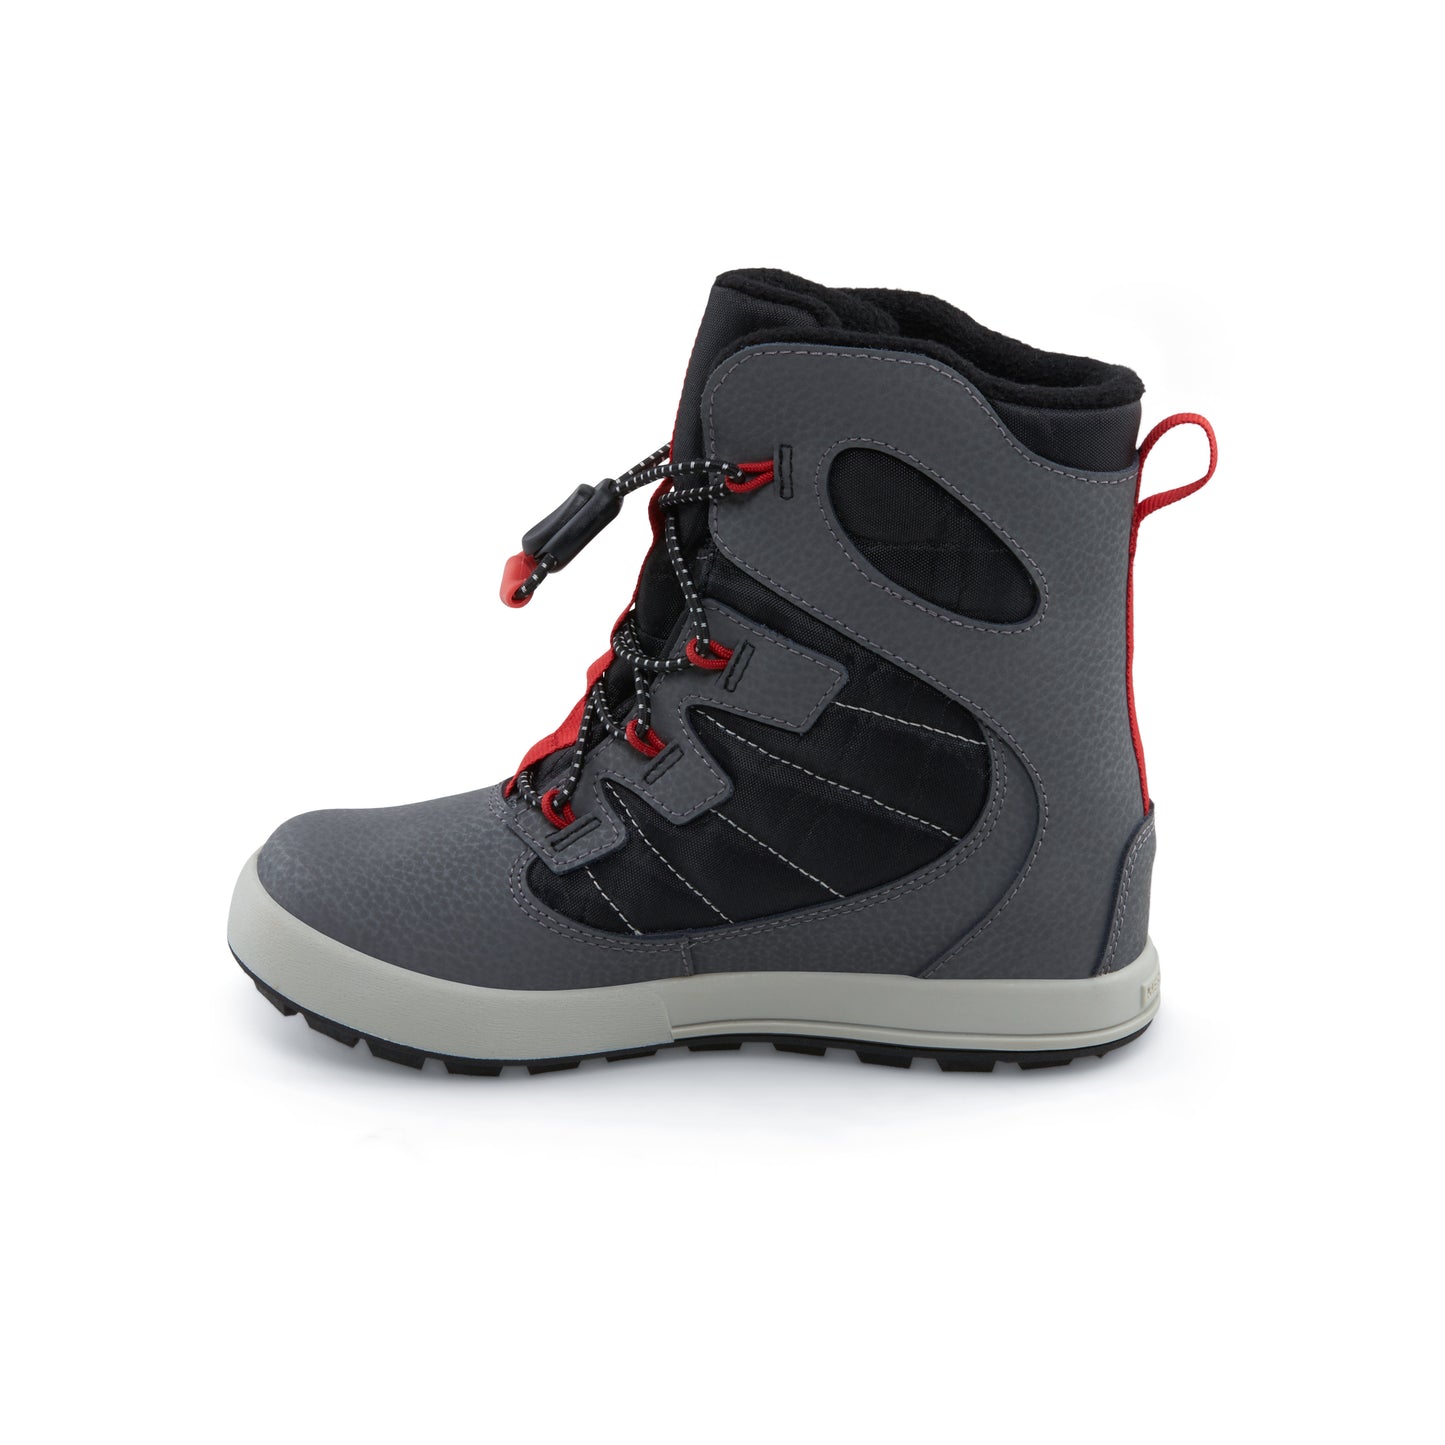 snow-bank-40-waterproof-boot-bigkid-grey-black-red__Grey/Black/Red_4